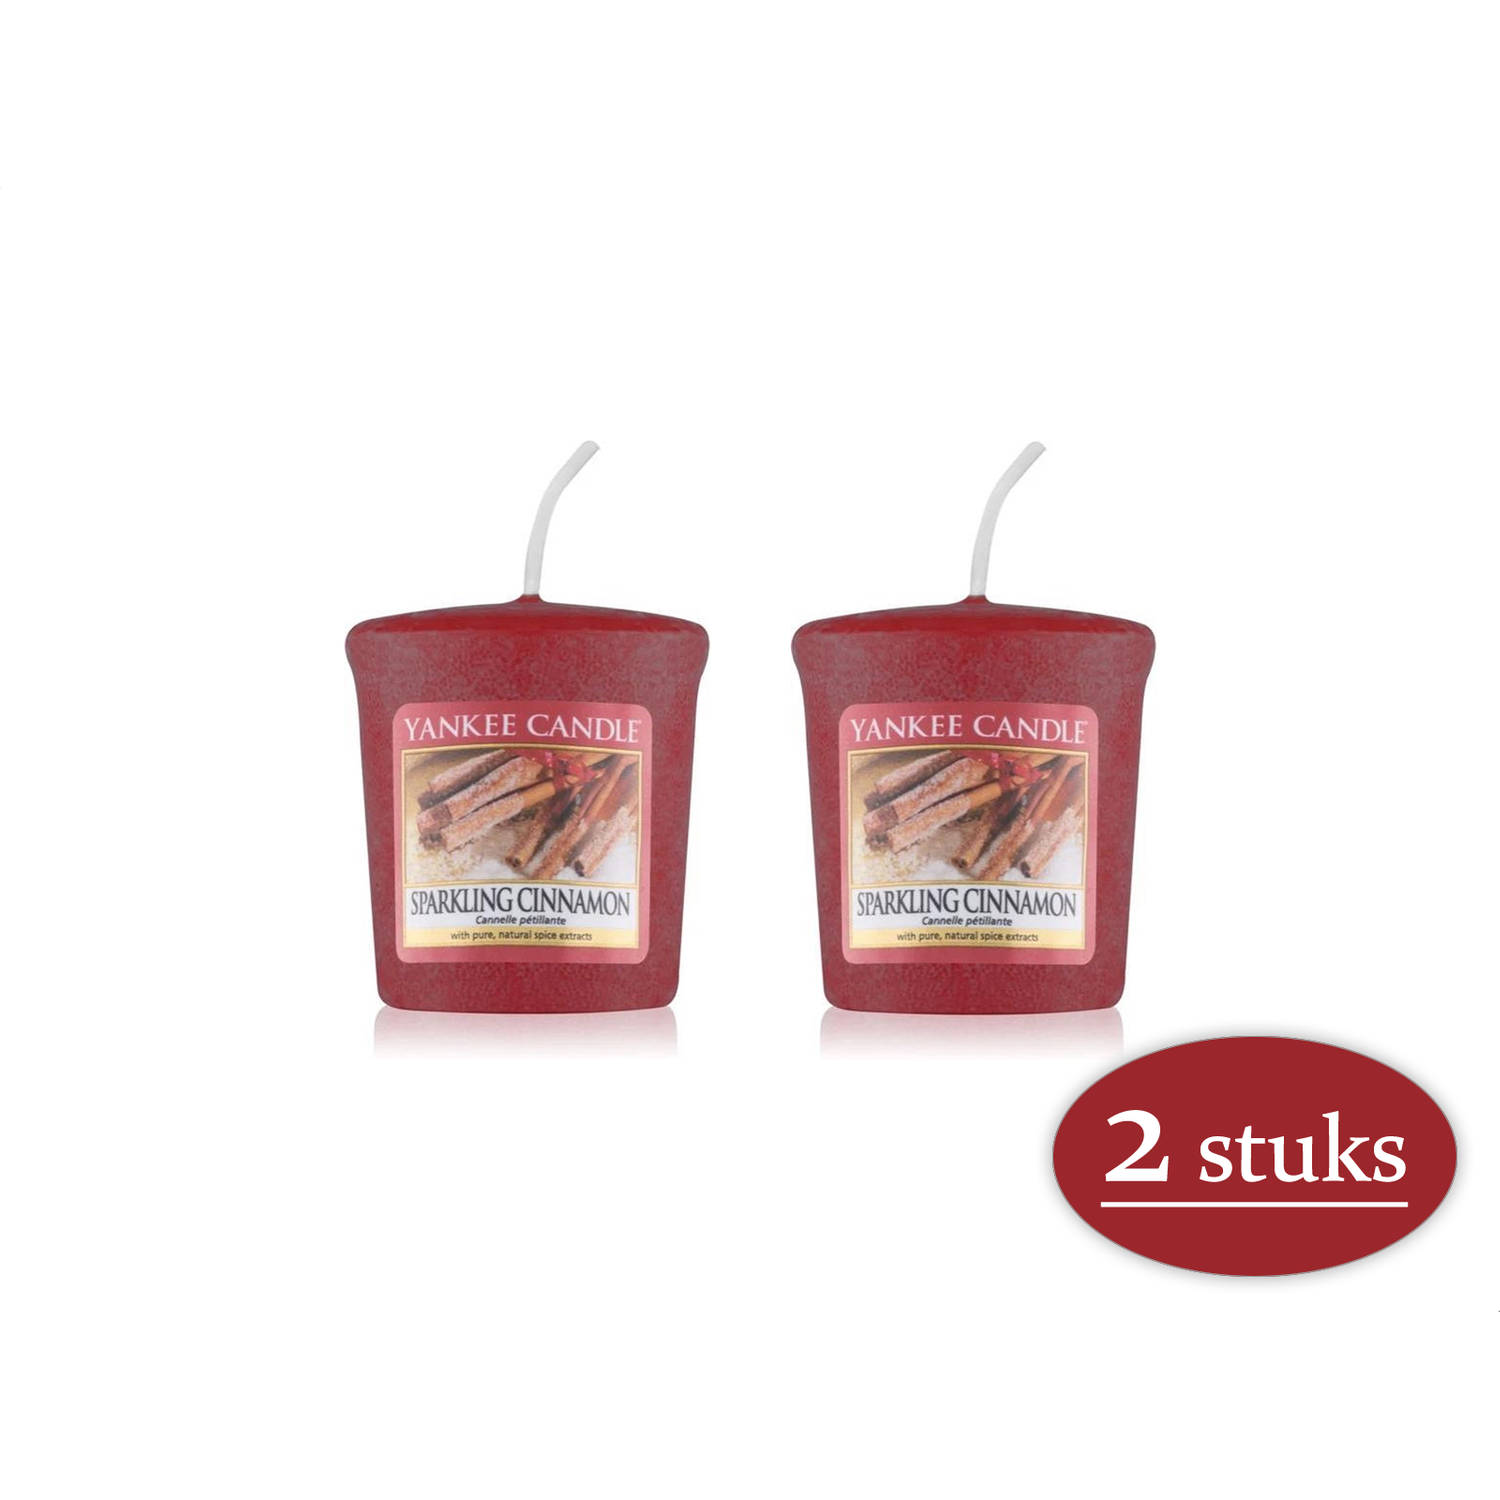 2 stuks Yankee Candle Sparkling Cinnamon Geurkaars Kerstkaars - Rood - 4 branduren - de geur van de winter